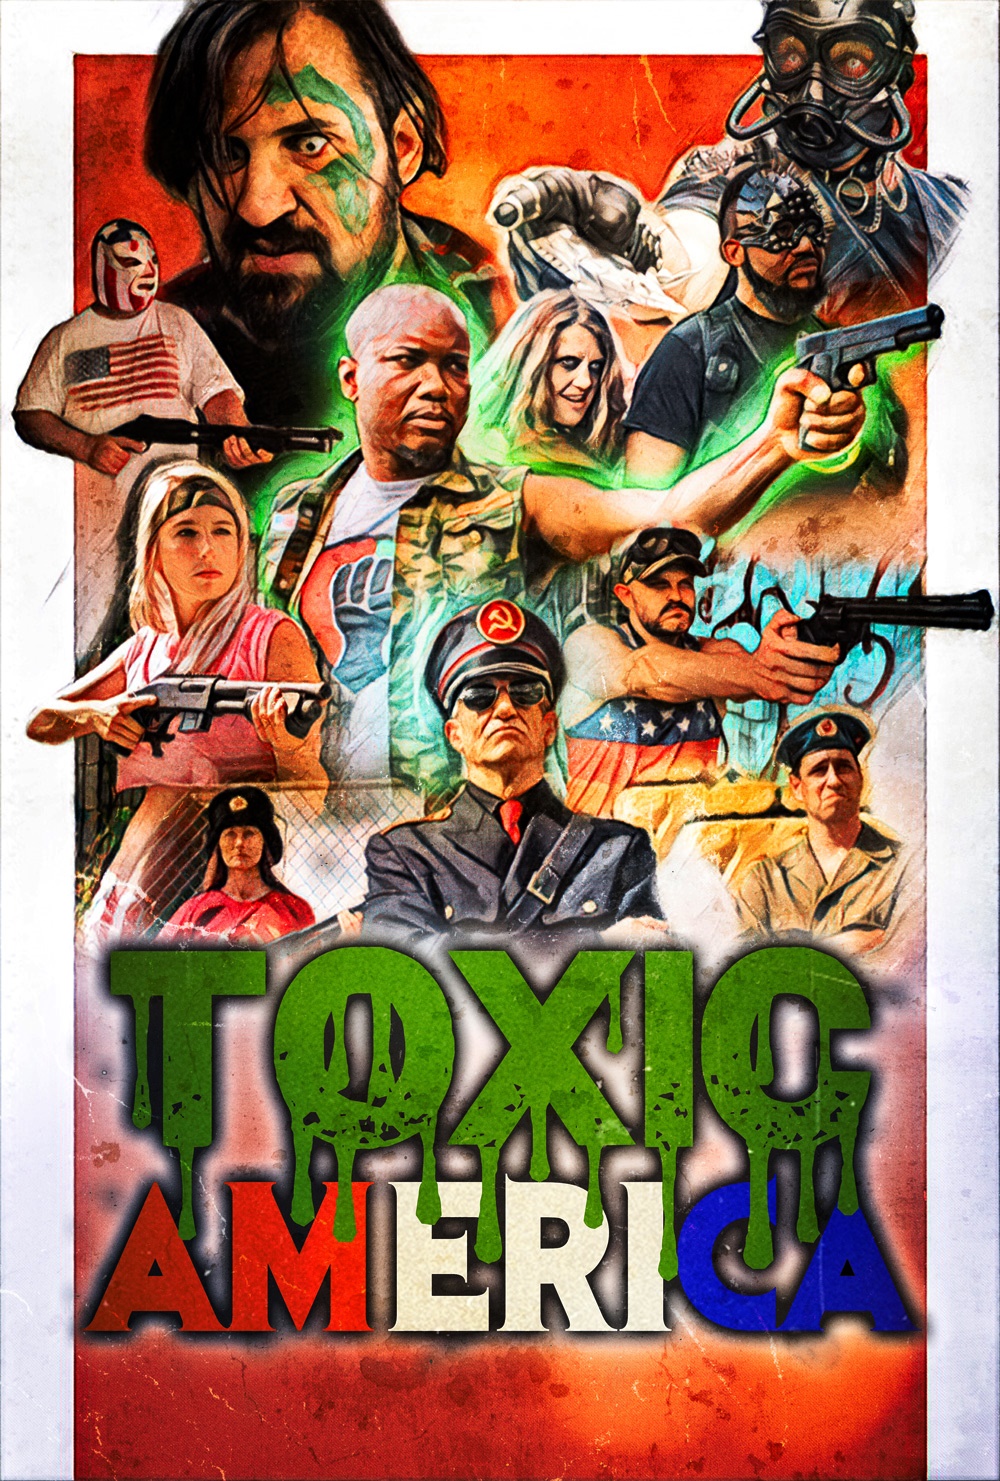 Toxic America